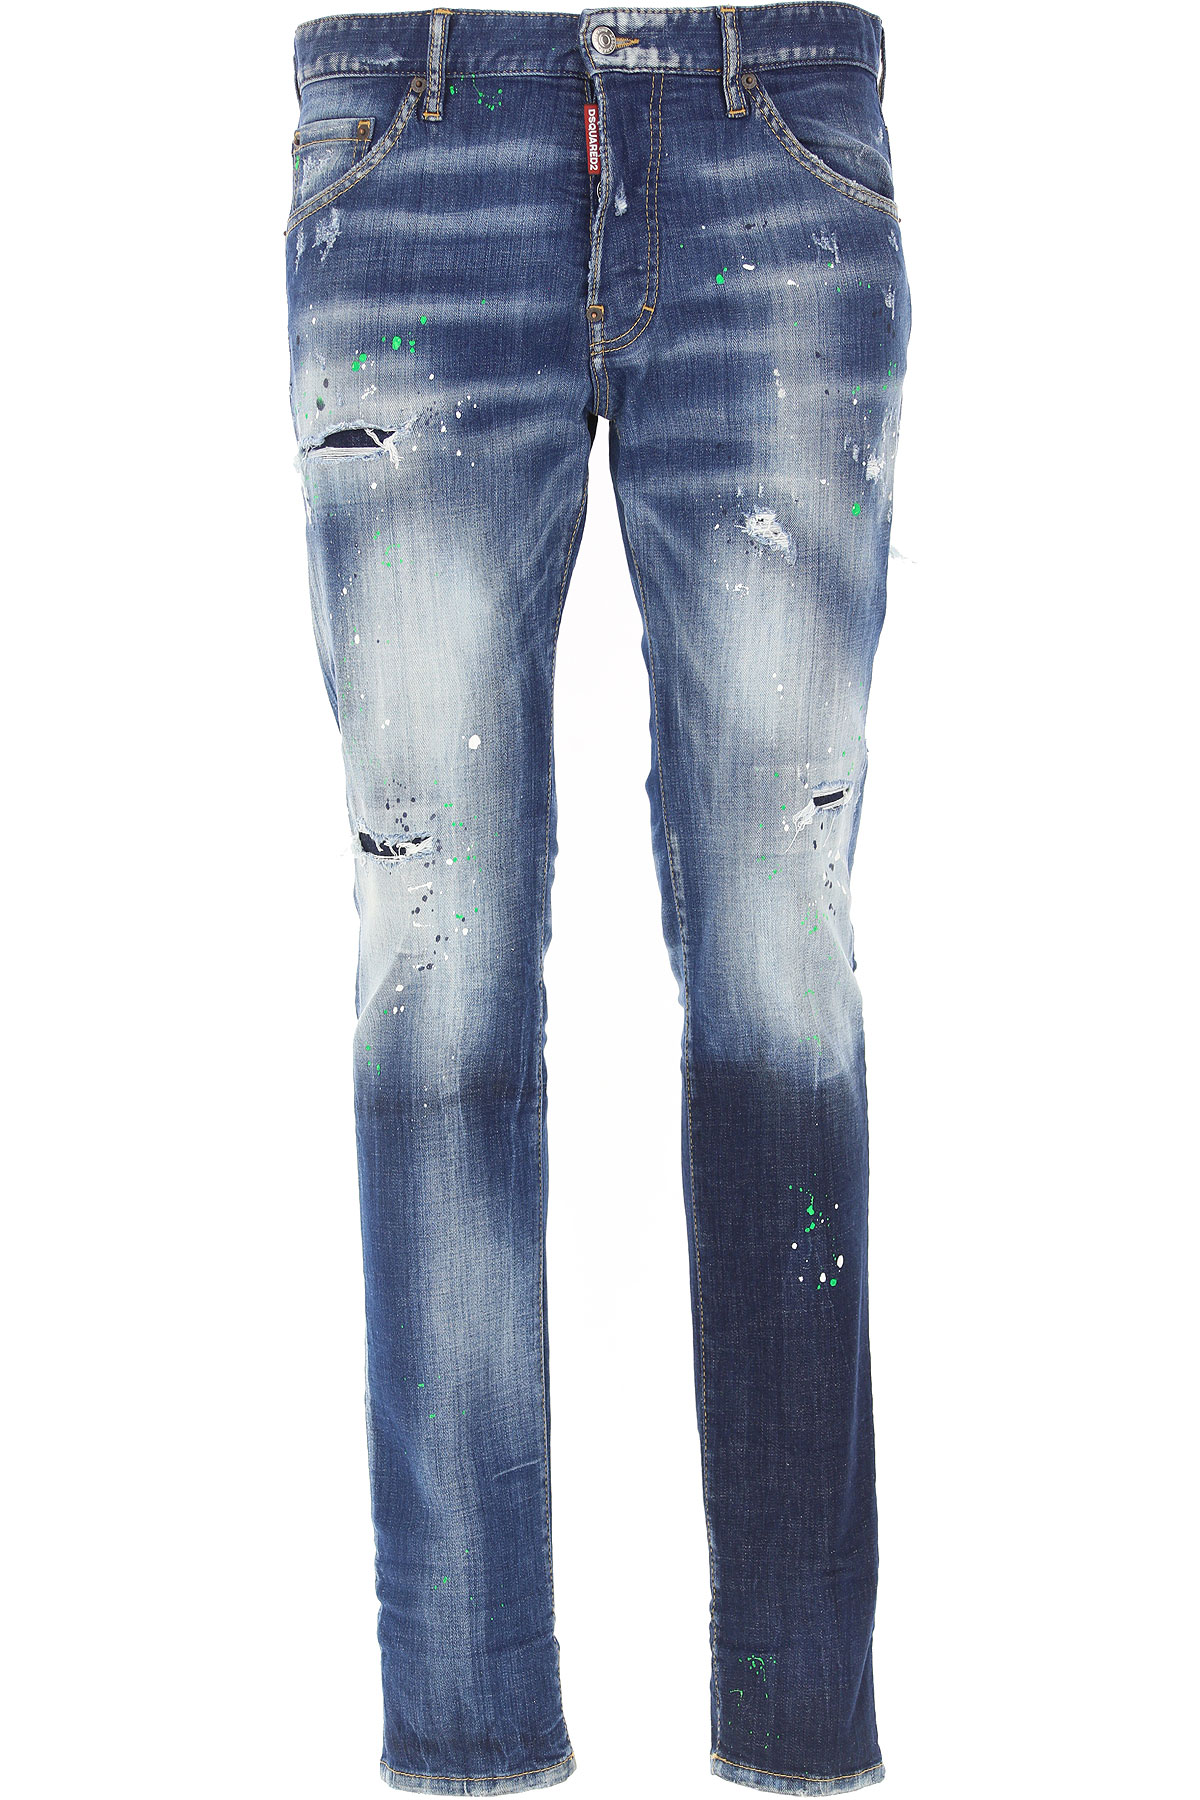 dsquared jeans raffaello